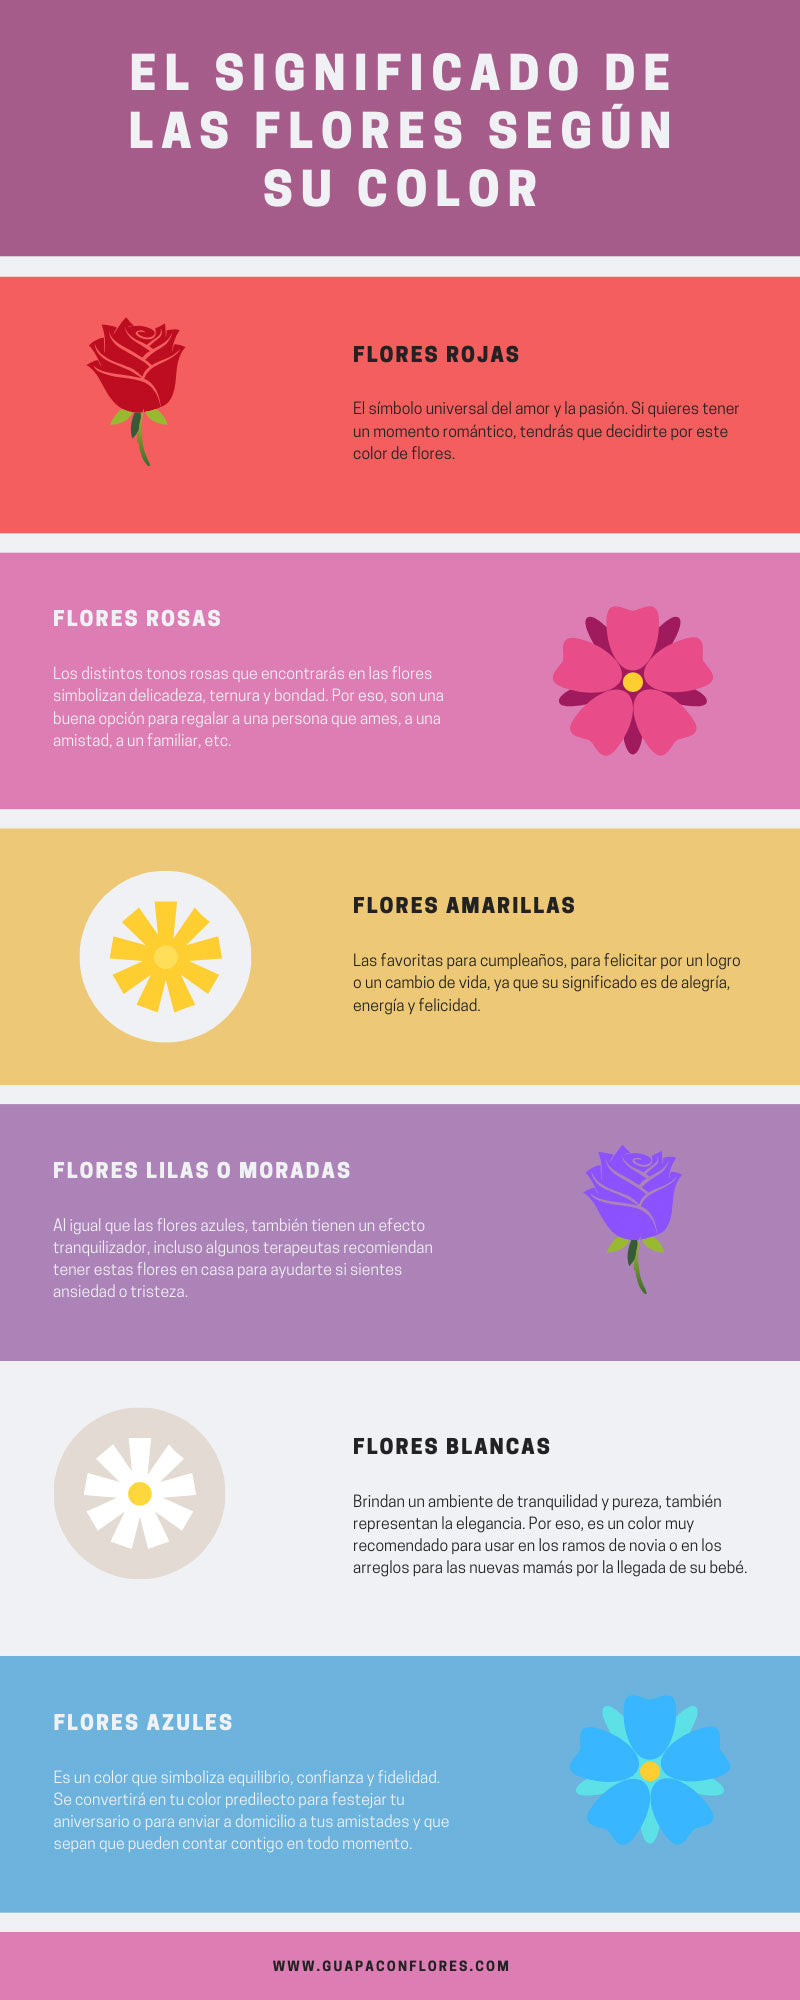 El significado de las flores 